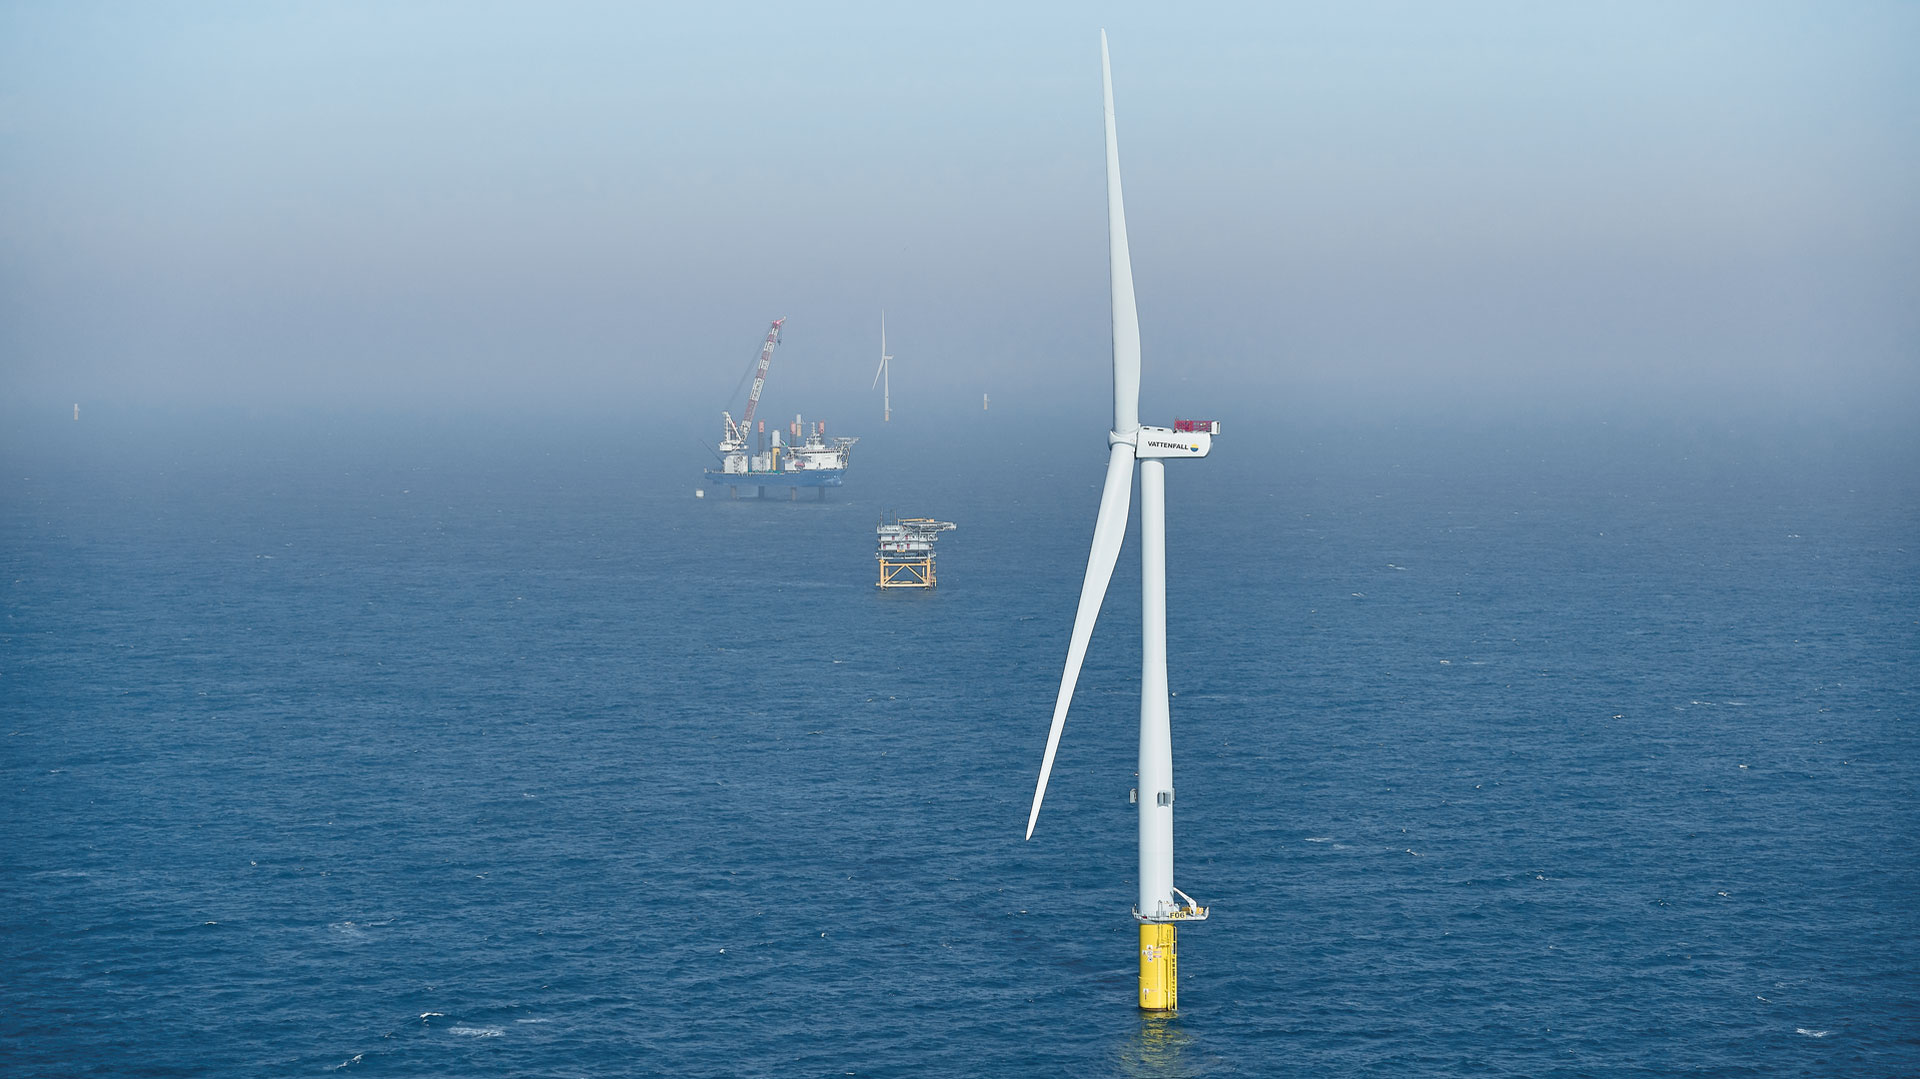 Horns rev 3 offshore wind farm